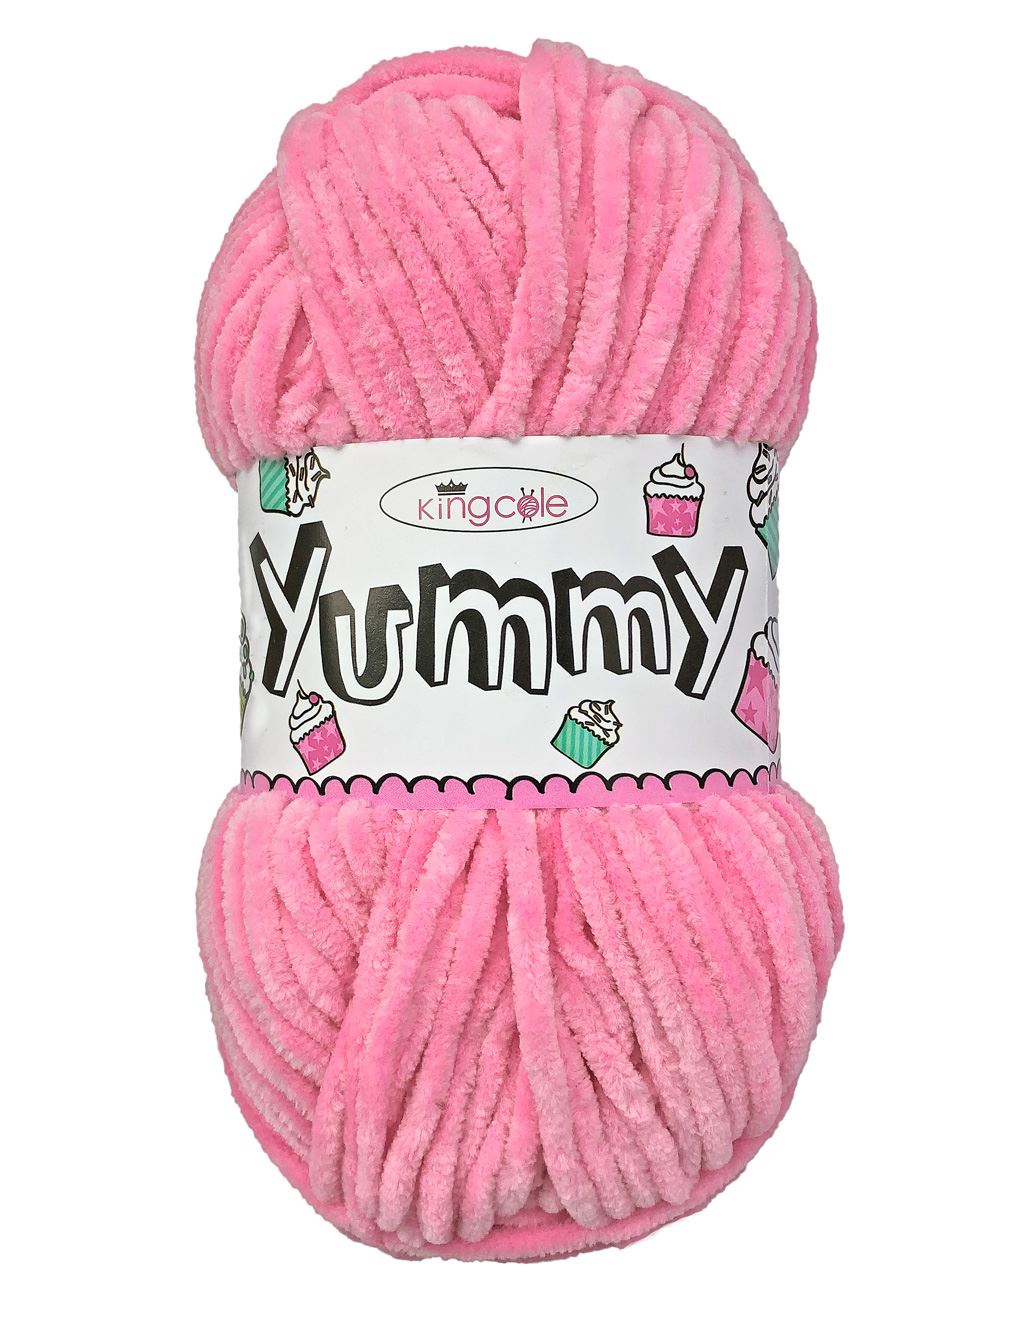 King Cole Yummy Sugar Pink (3463) chenille yarn - 100g